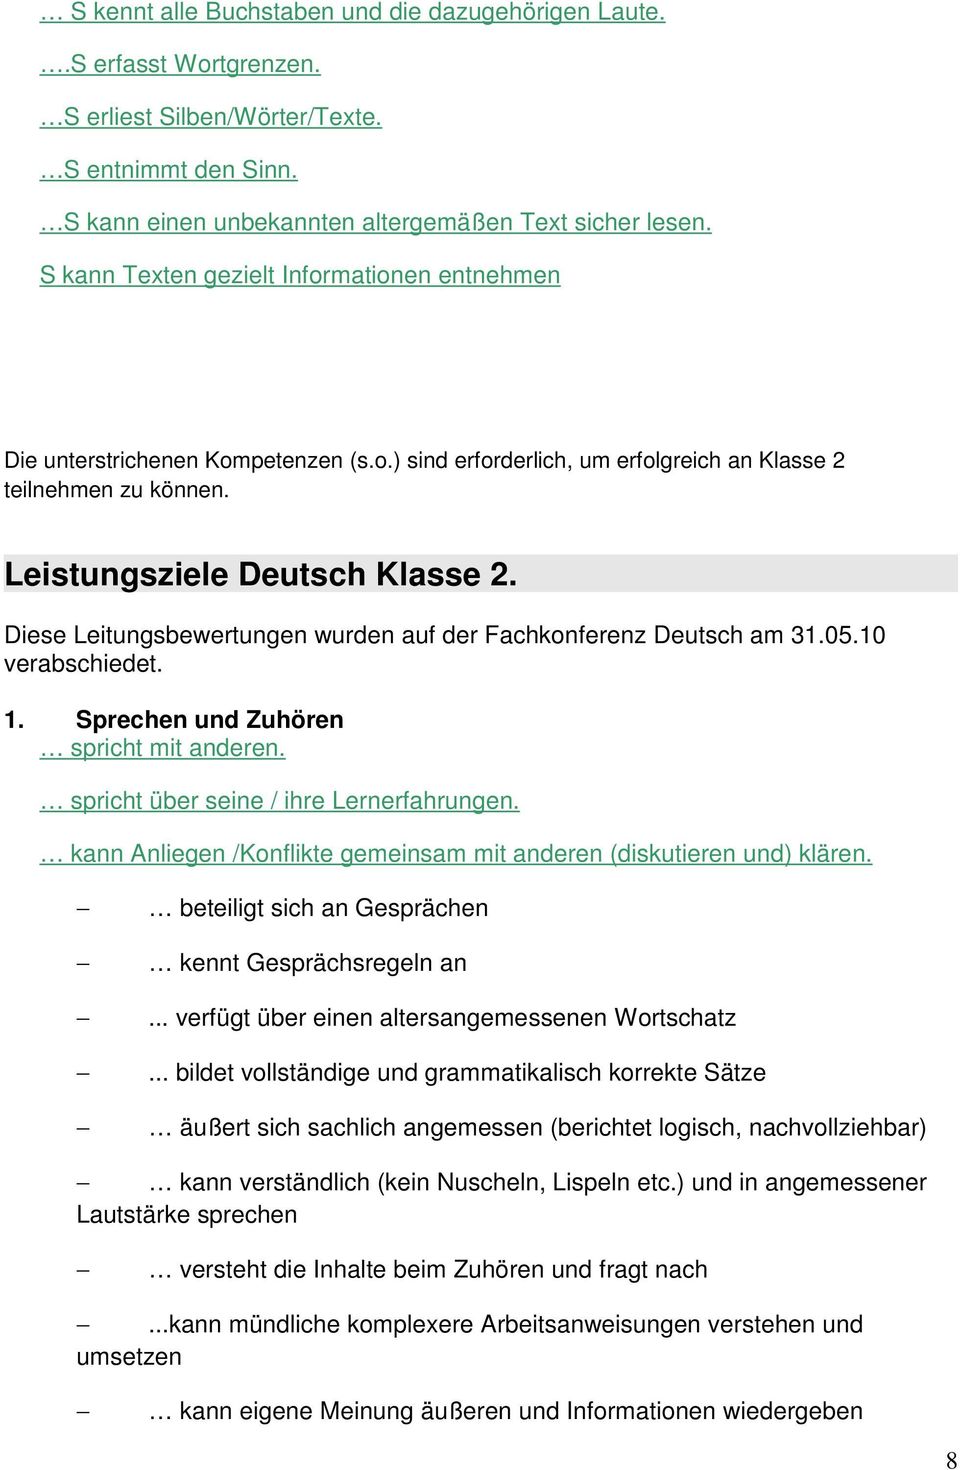 Diese Leitungsbewertungen wurden auf der Fachkonferenz Deutsch am 31.05.10 verabschiedet. 1. Sprechen und Zuhören spricht mit anderen. spricht über seine / ihre Lernerfahrungen.